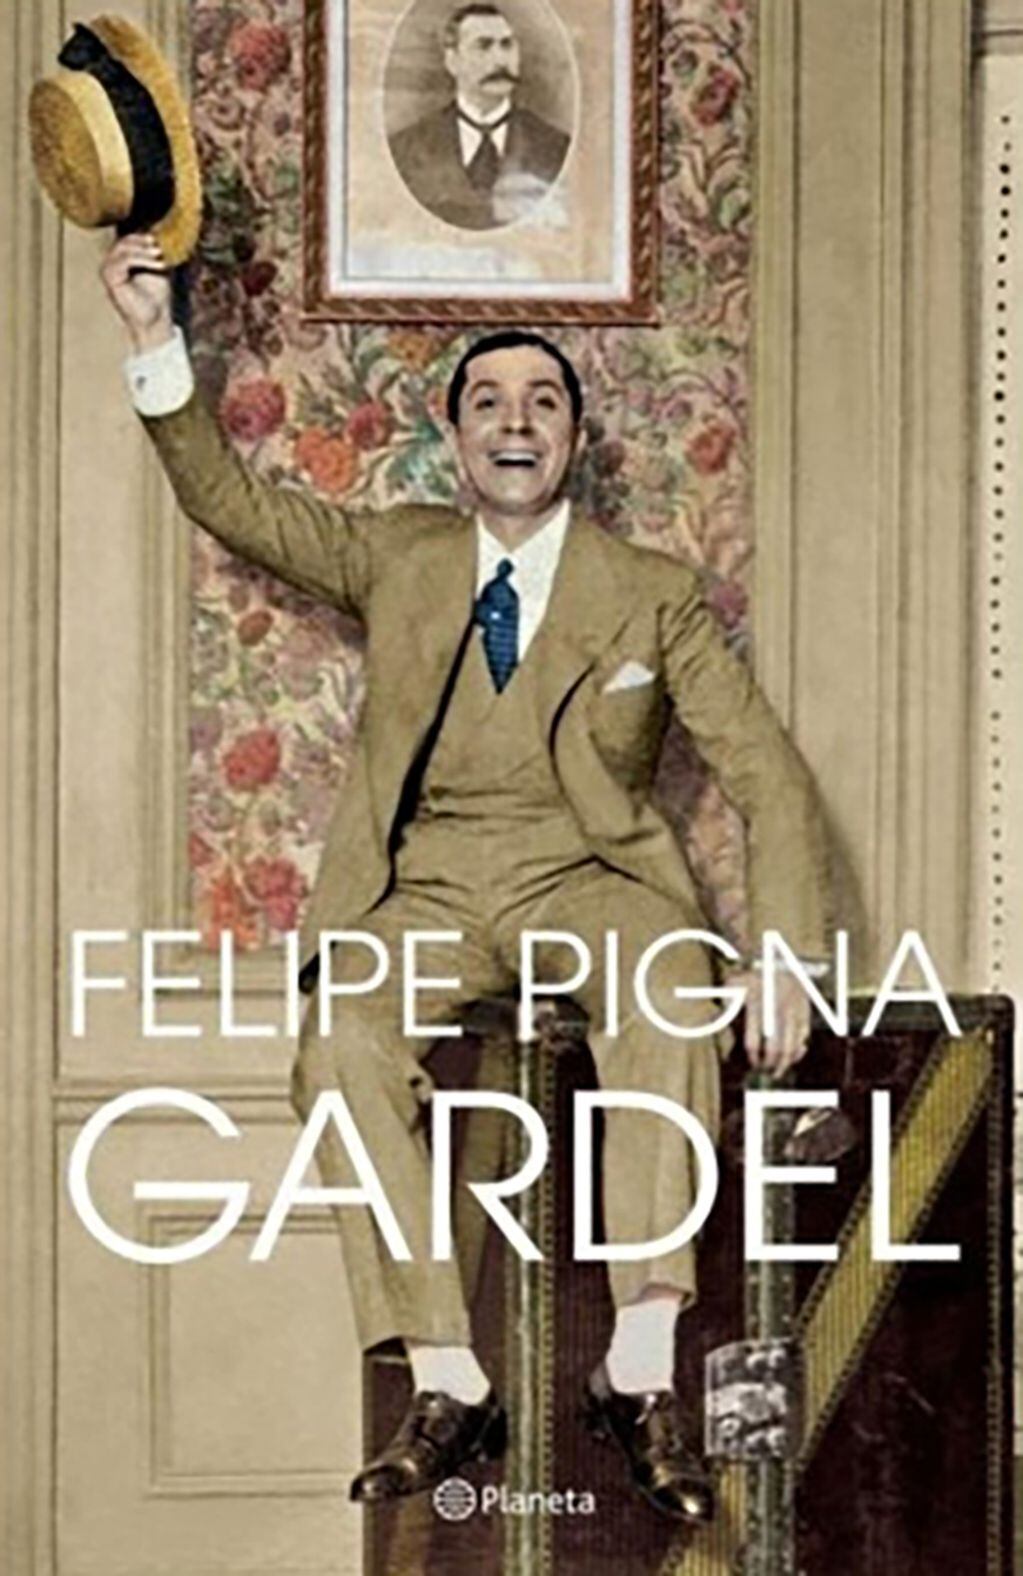 "Carlos Gardel fue esencialmente un cantante folclórico hasta 1917, cuando se animó a grabar un tango por primera vez... El elegido fue 'Mi noche triste'”, cuenta Felipe Pigna. Foto: Fede Lopez Claro